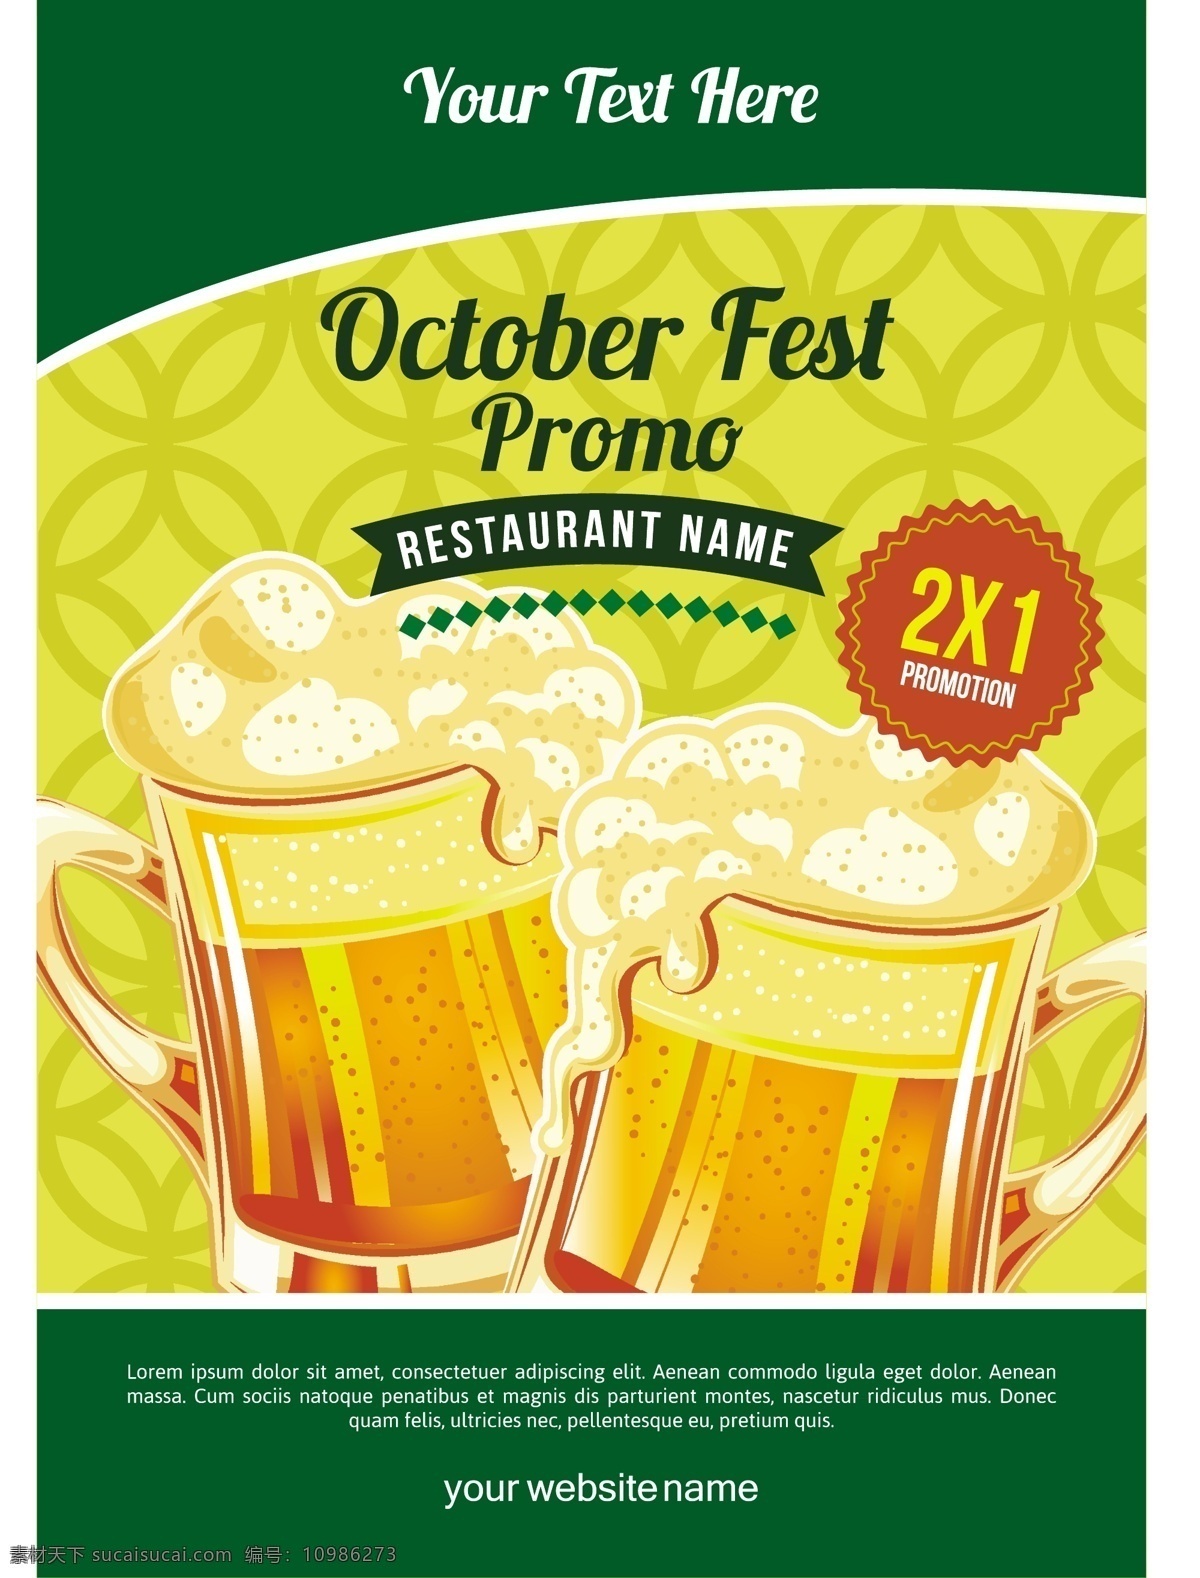 啤酒海报 啤酒 餐饮 啤酒文化 啤酒节 矢量 啤酒杯 绿色 食品蔬菜水果